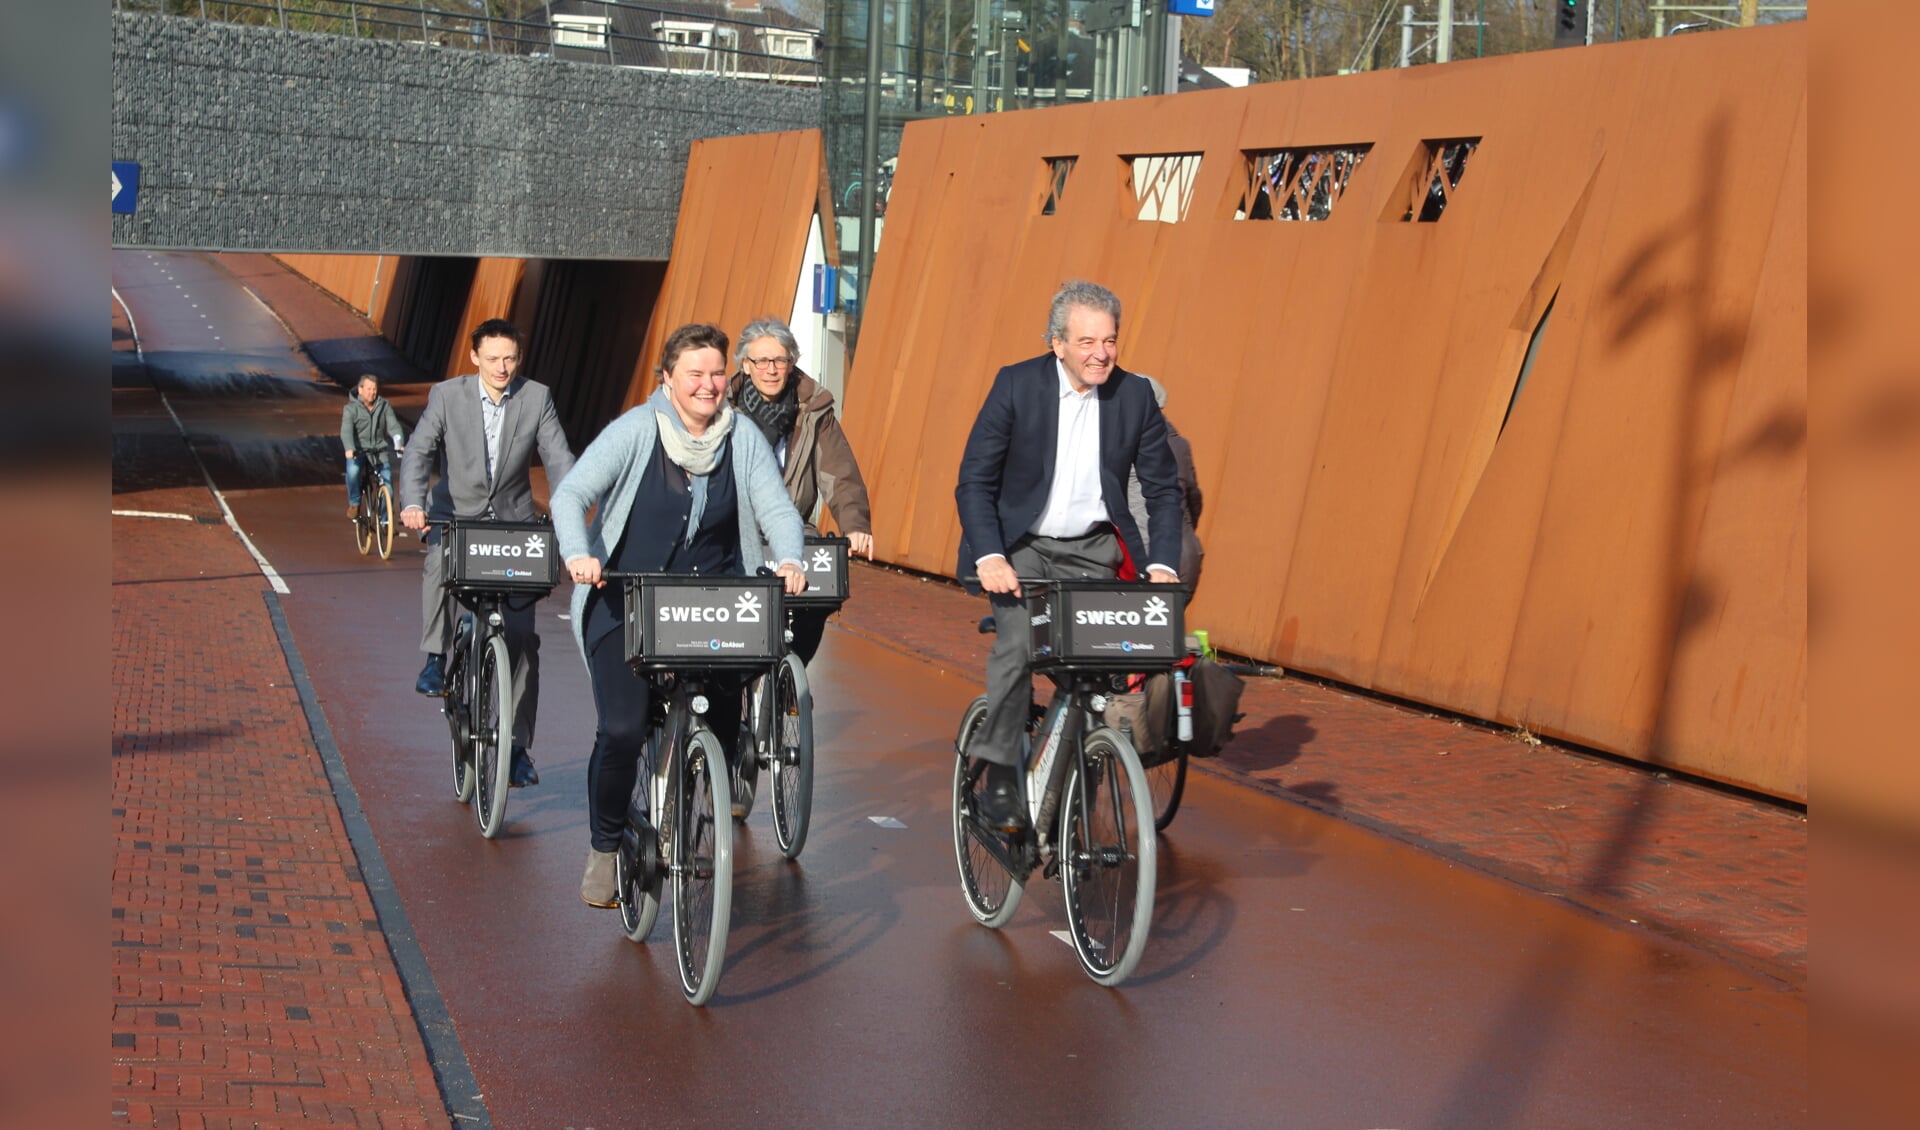  Op station Bilthoven kan men vanaf maandag 12 maart op een deelfiets stappen. Wethouder Anne Brommersma en wethouder Ebbe Rost van Tonningen maakten de eerste rit op de Utrecht Science Park Campusbikes.